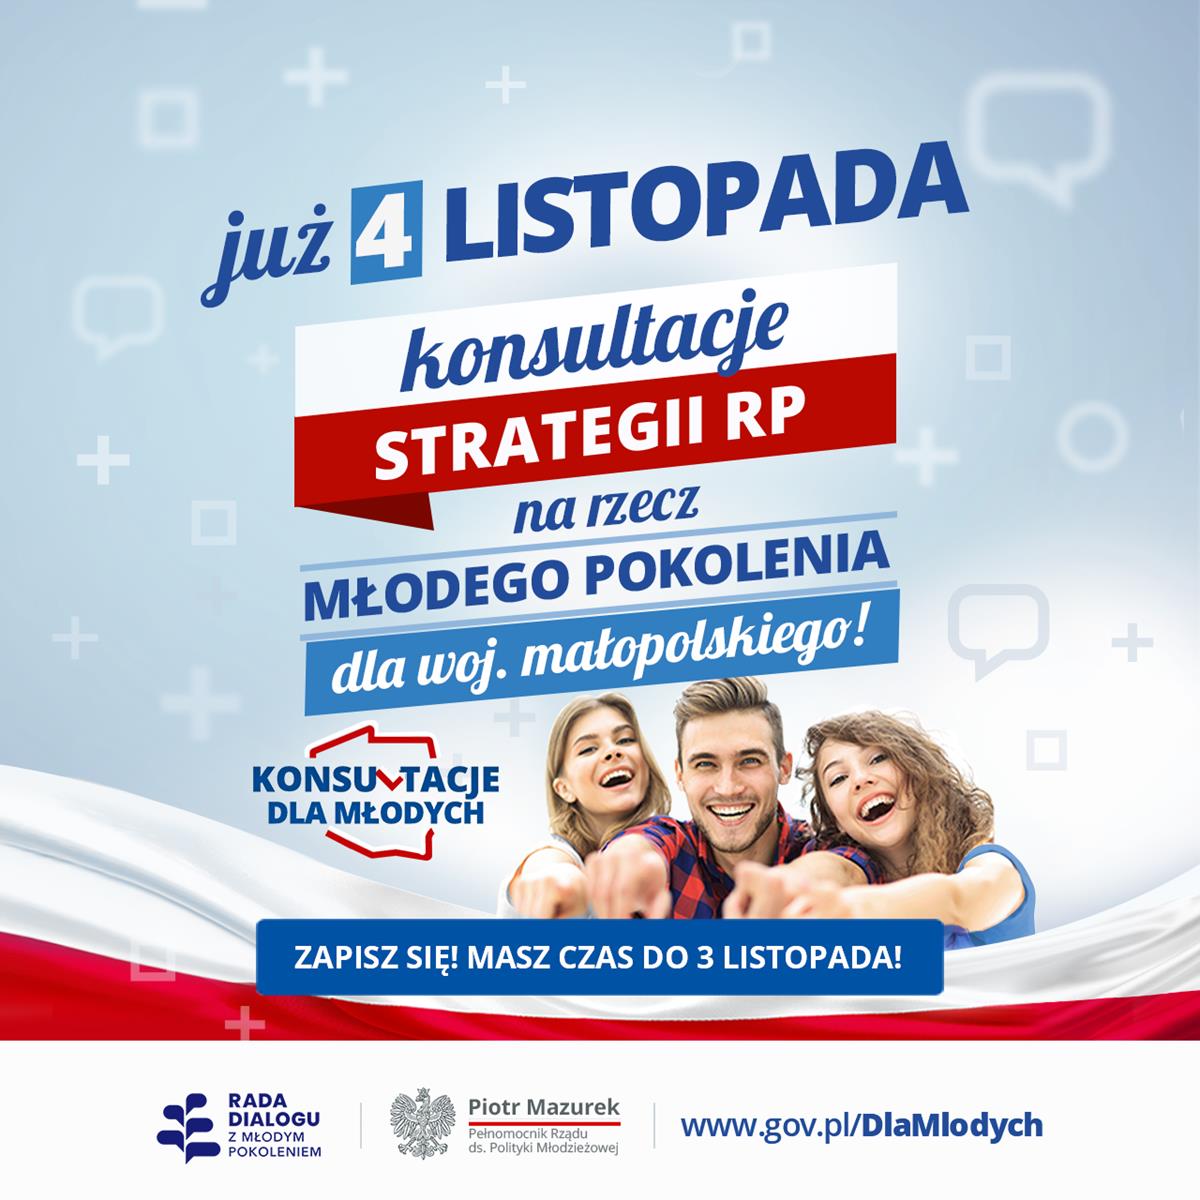 Plakat promujący zapis na konsultacje strategii dla młodych w woj. małopolskim